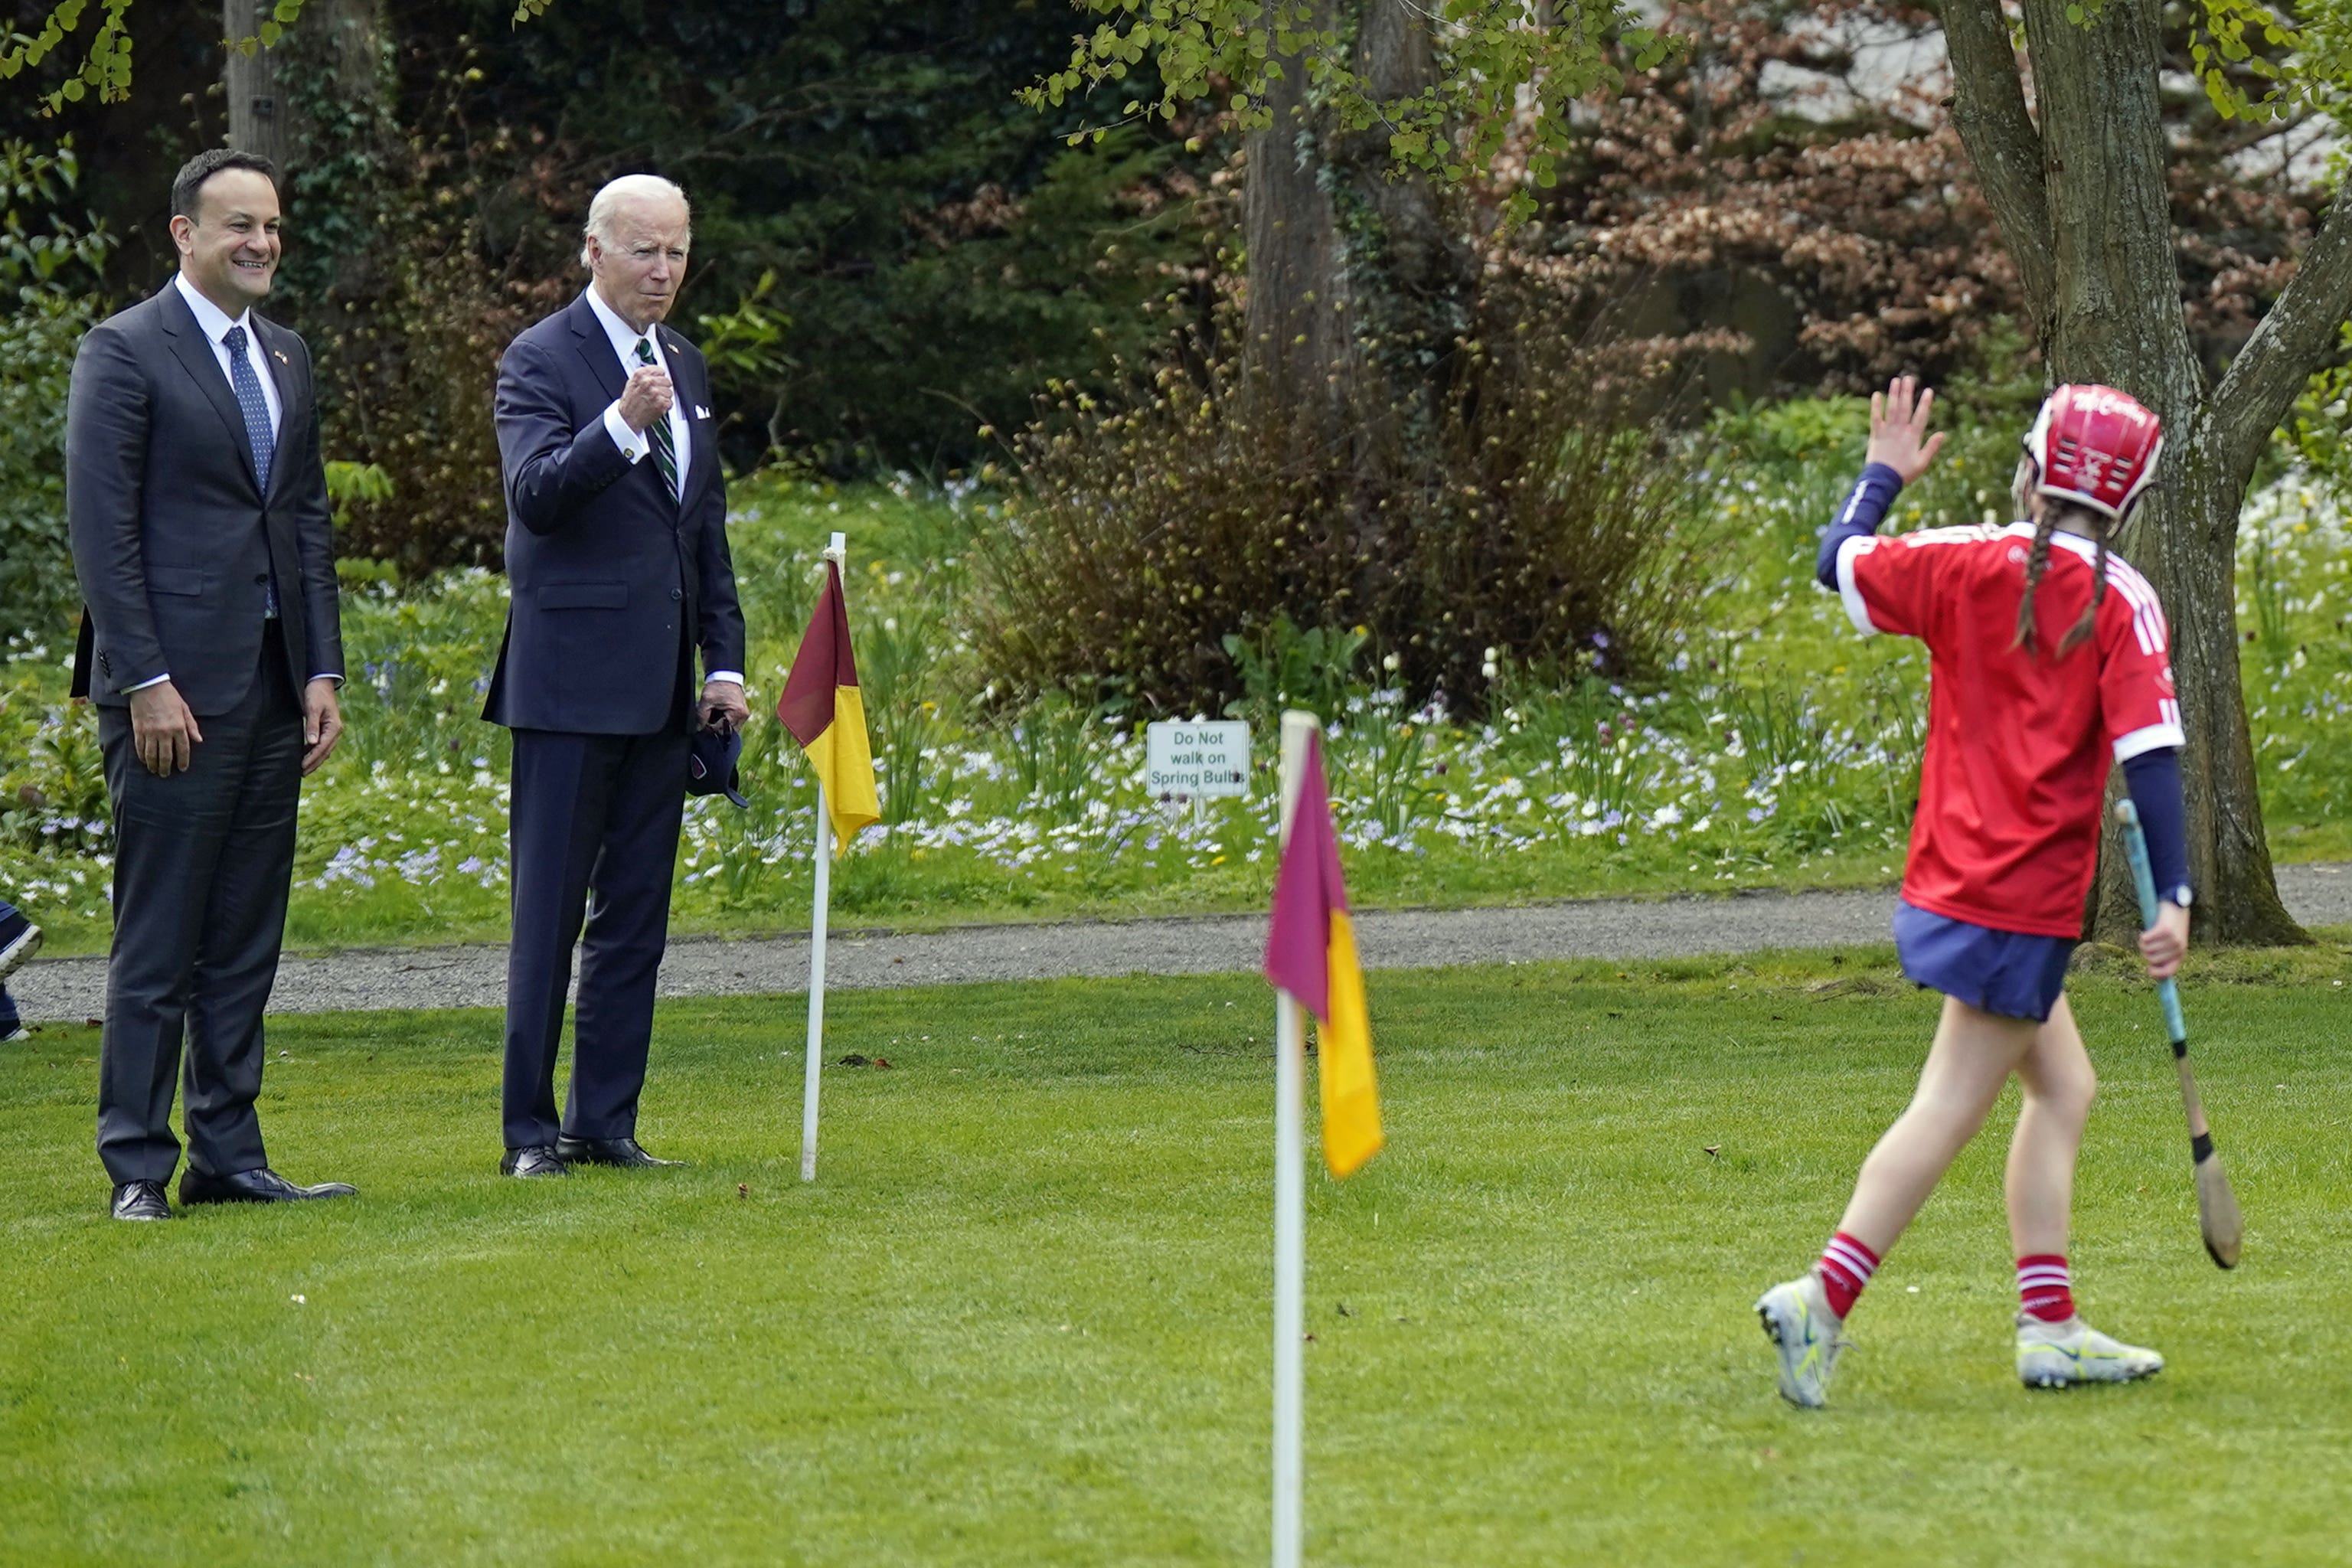 US president Joe Biden and Taoiseach Leo Varadkar watch a camogie game at Farmleigh House, Dublin (Niall Carson/PA)